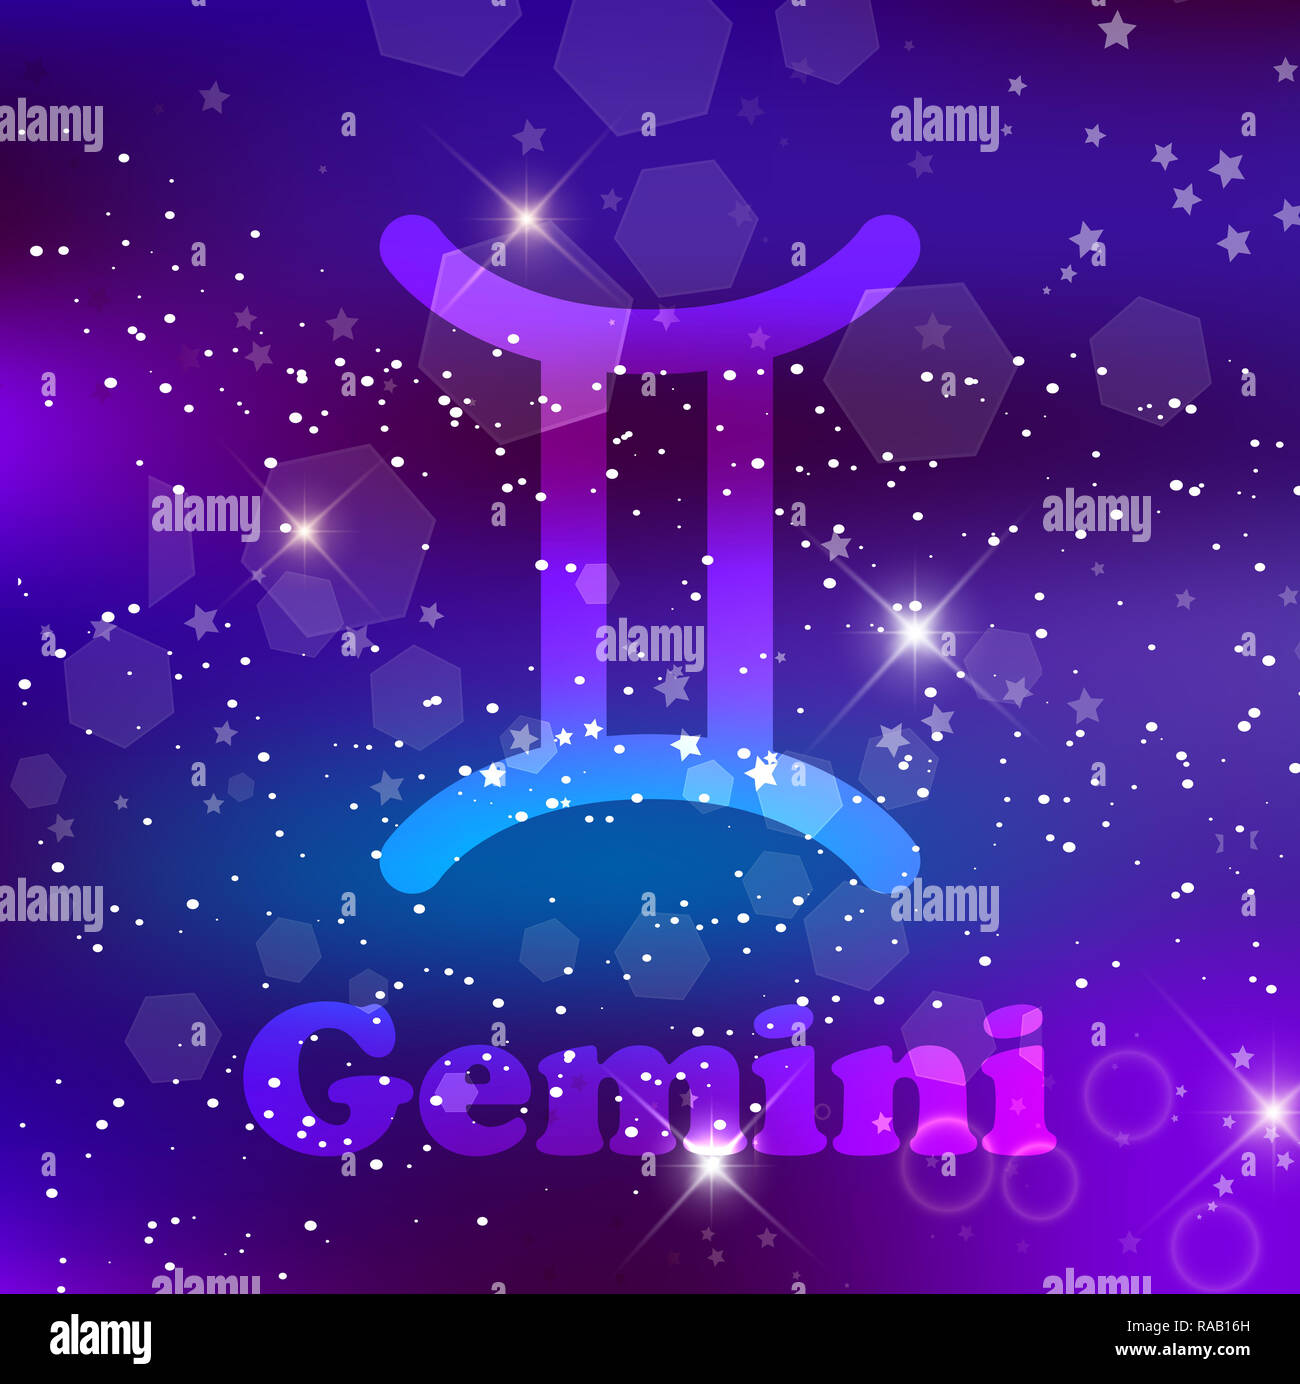 Gemini segno zodiacale e costellazione sul cosmica sfondo viola con stelle luccicanti e nebulosa. illustrazione, banner, poster, gemelli card. Spazio, AST Foto Stock